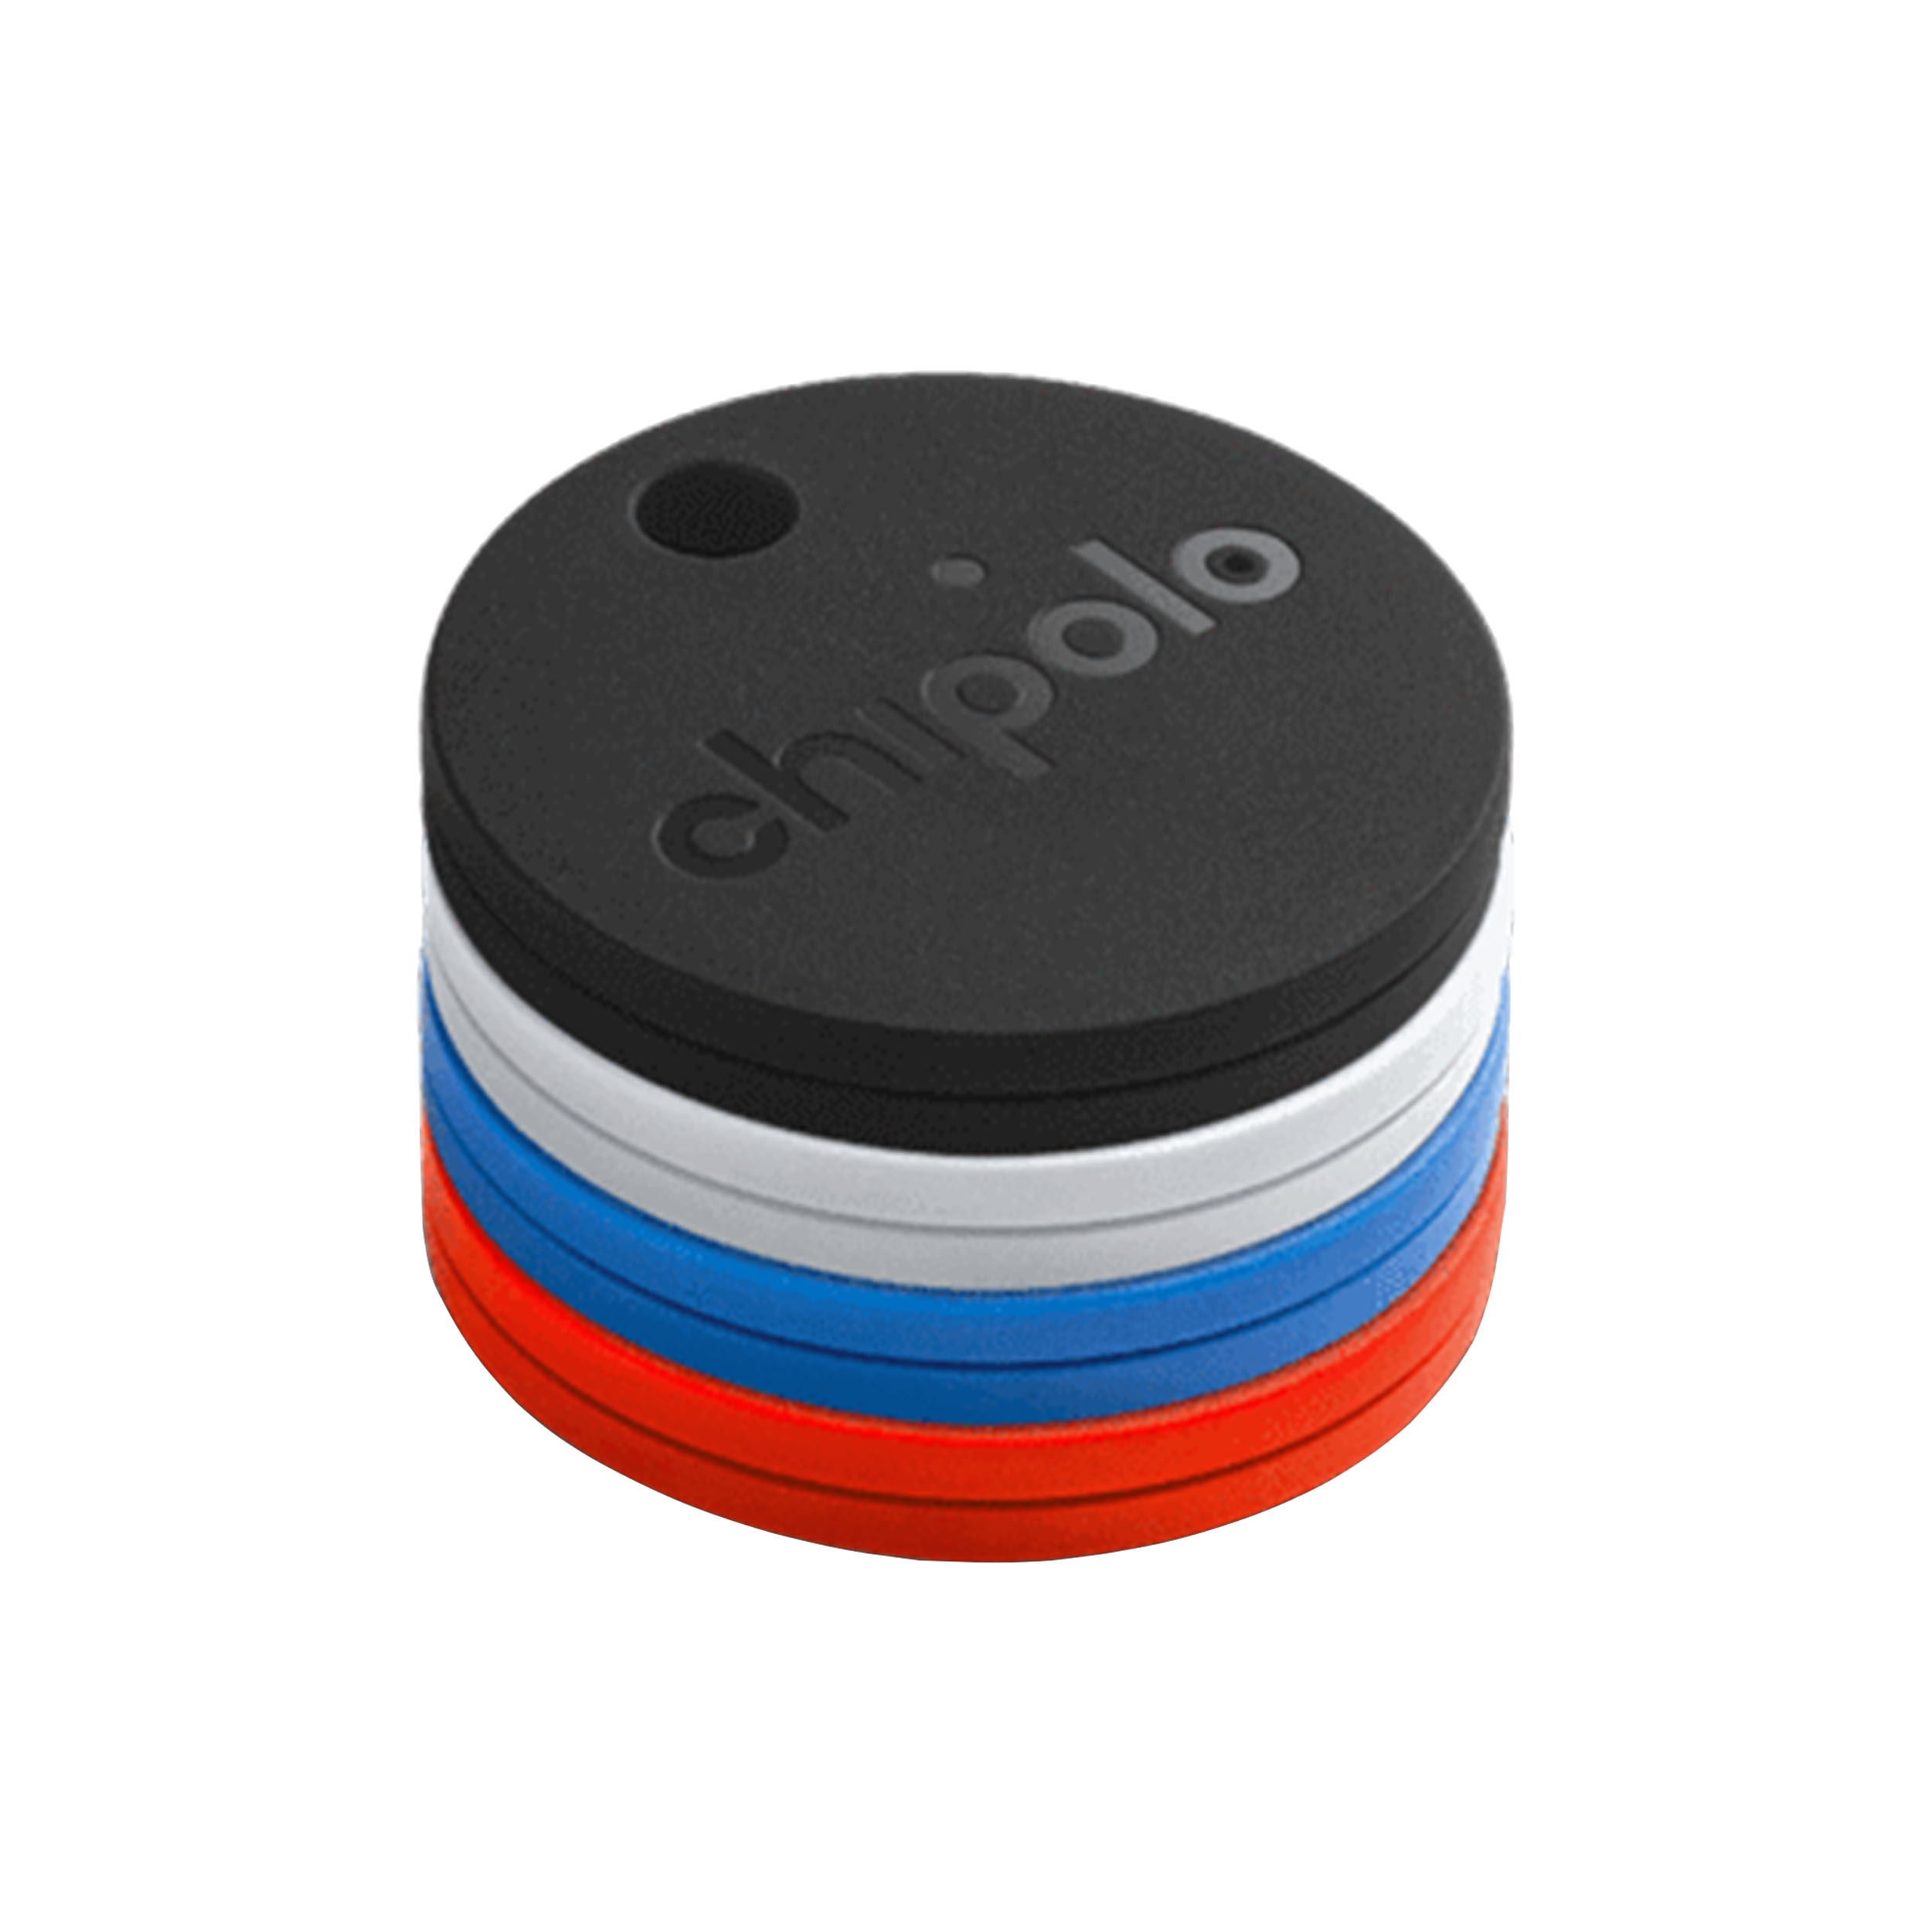 Chipolo One Bluetooth Schlüsselfinder 4er-Set